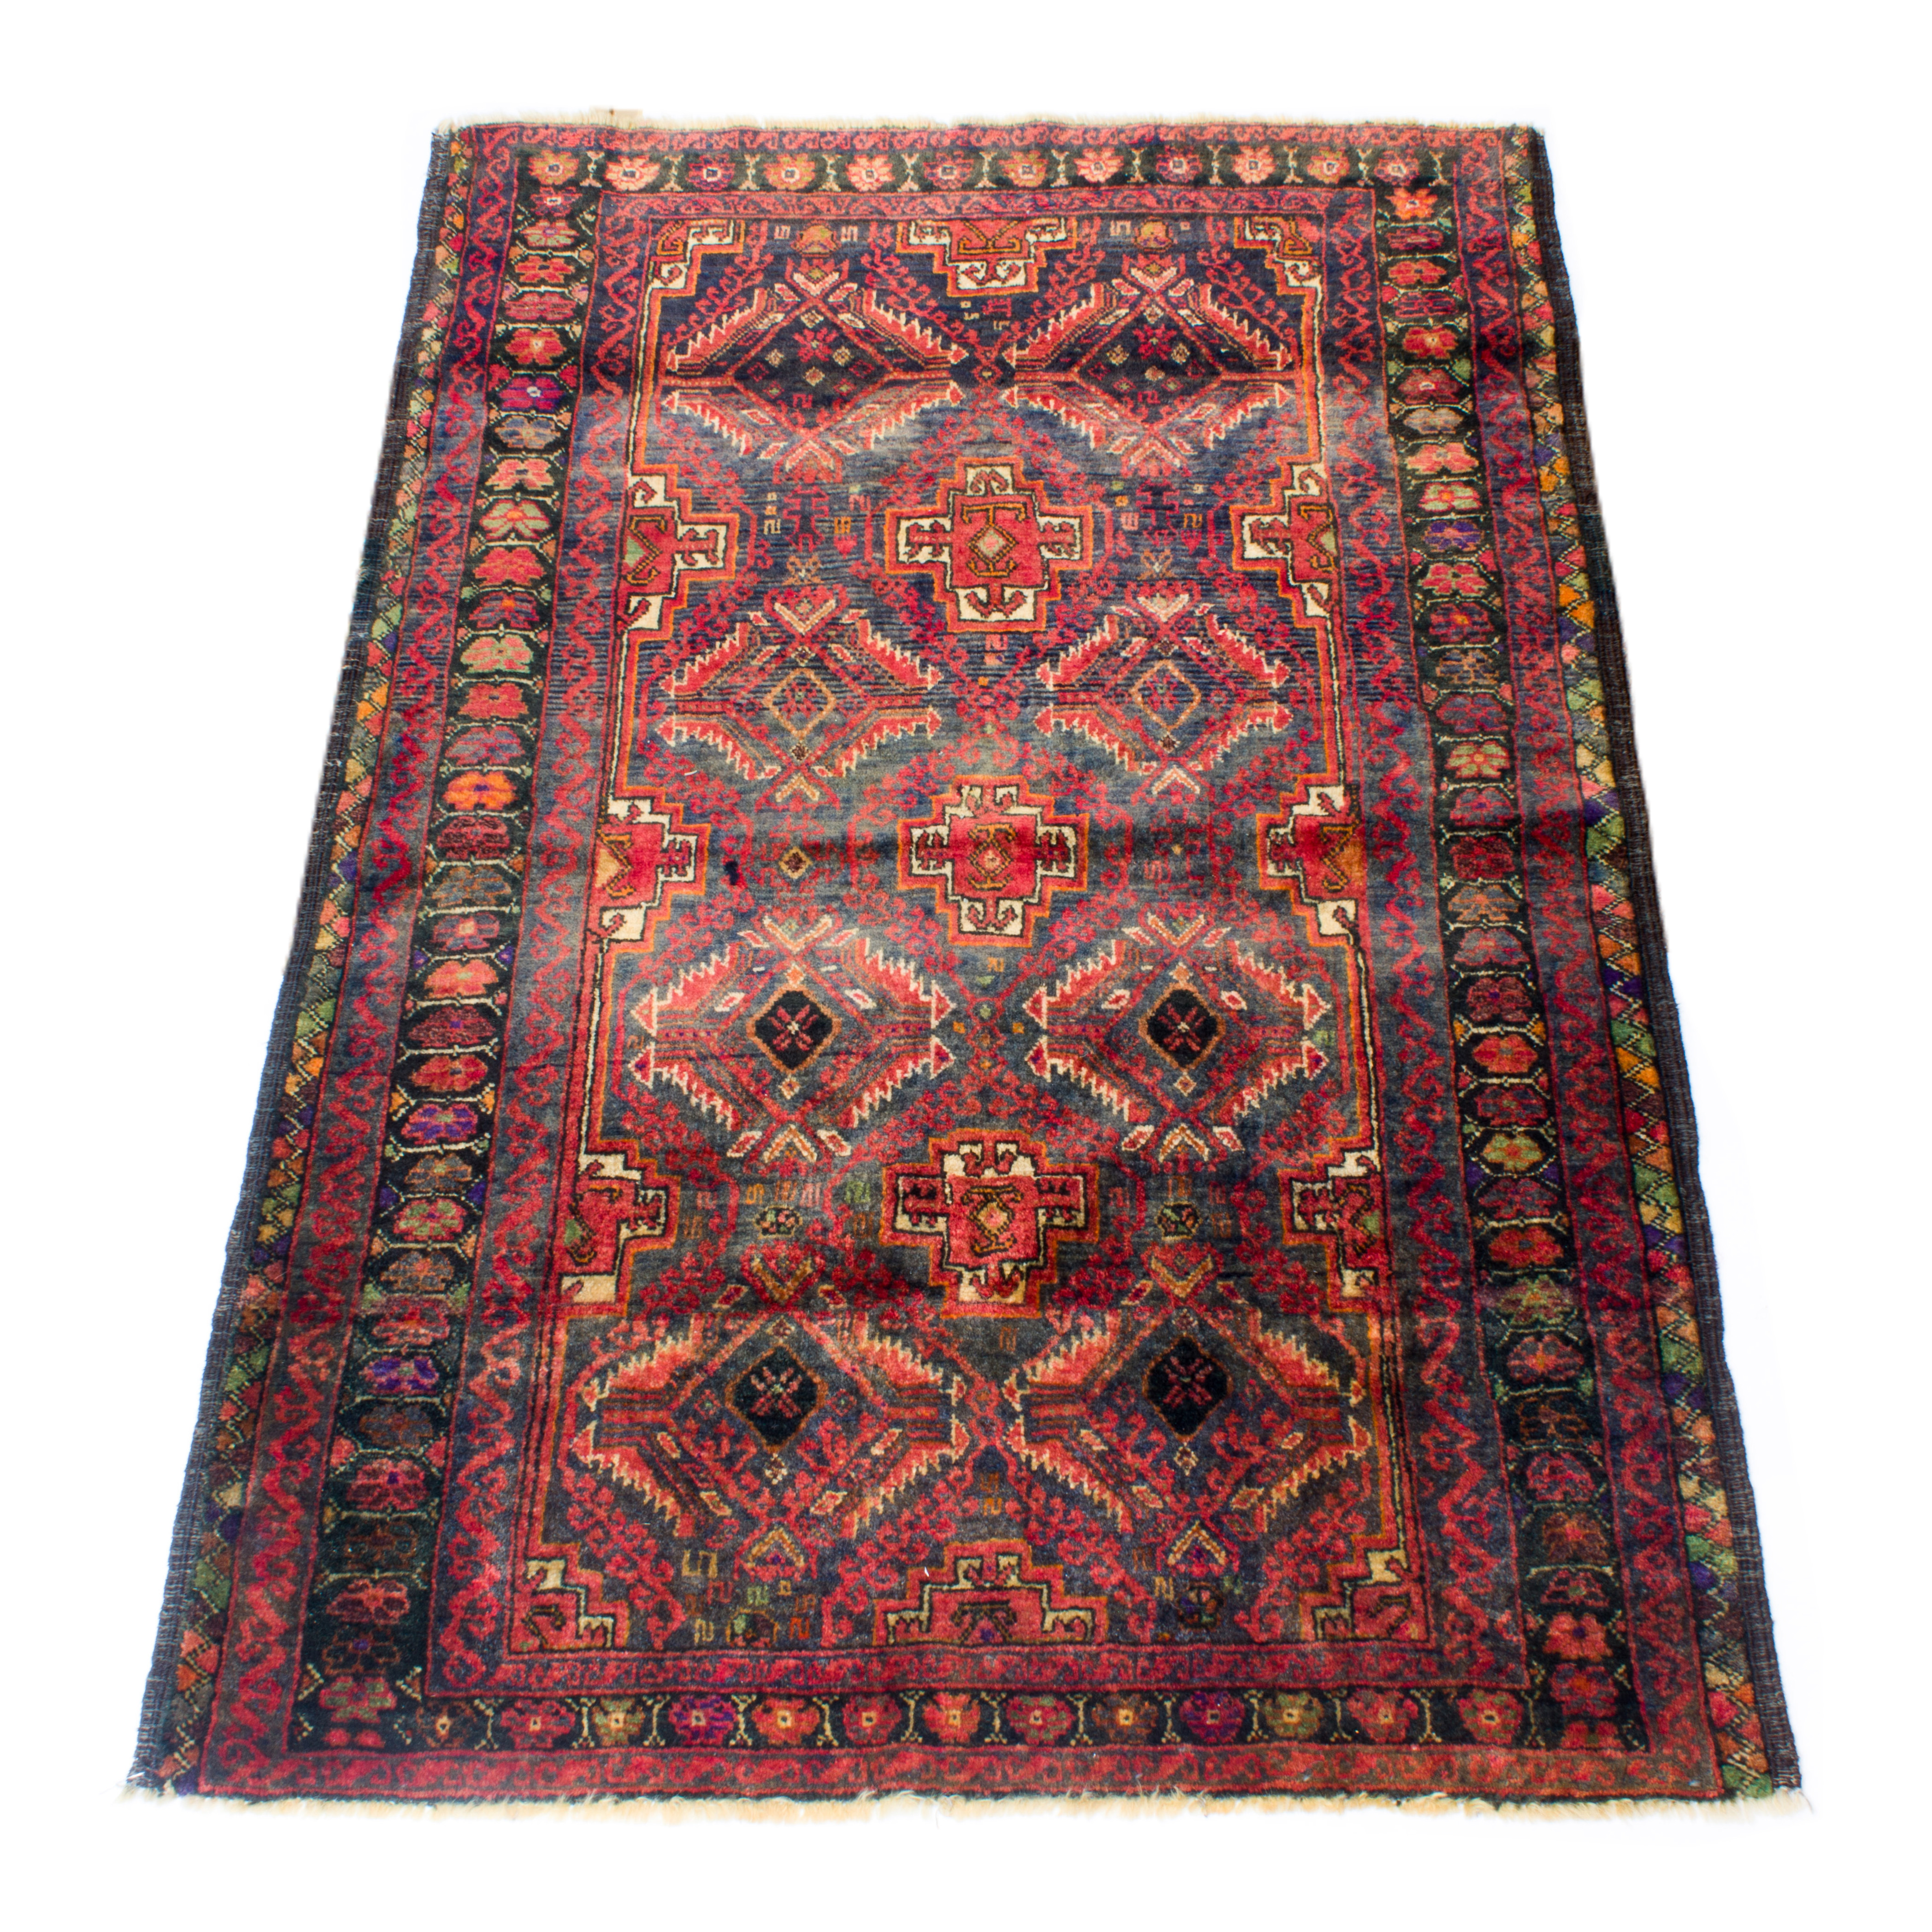 A BALOUCH CARPET A Balouch carpet  3a3522